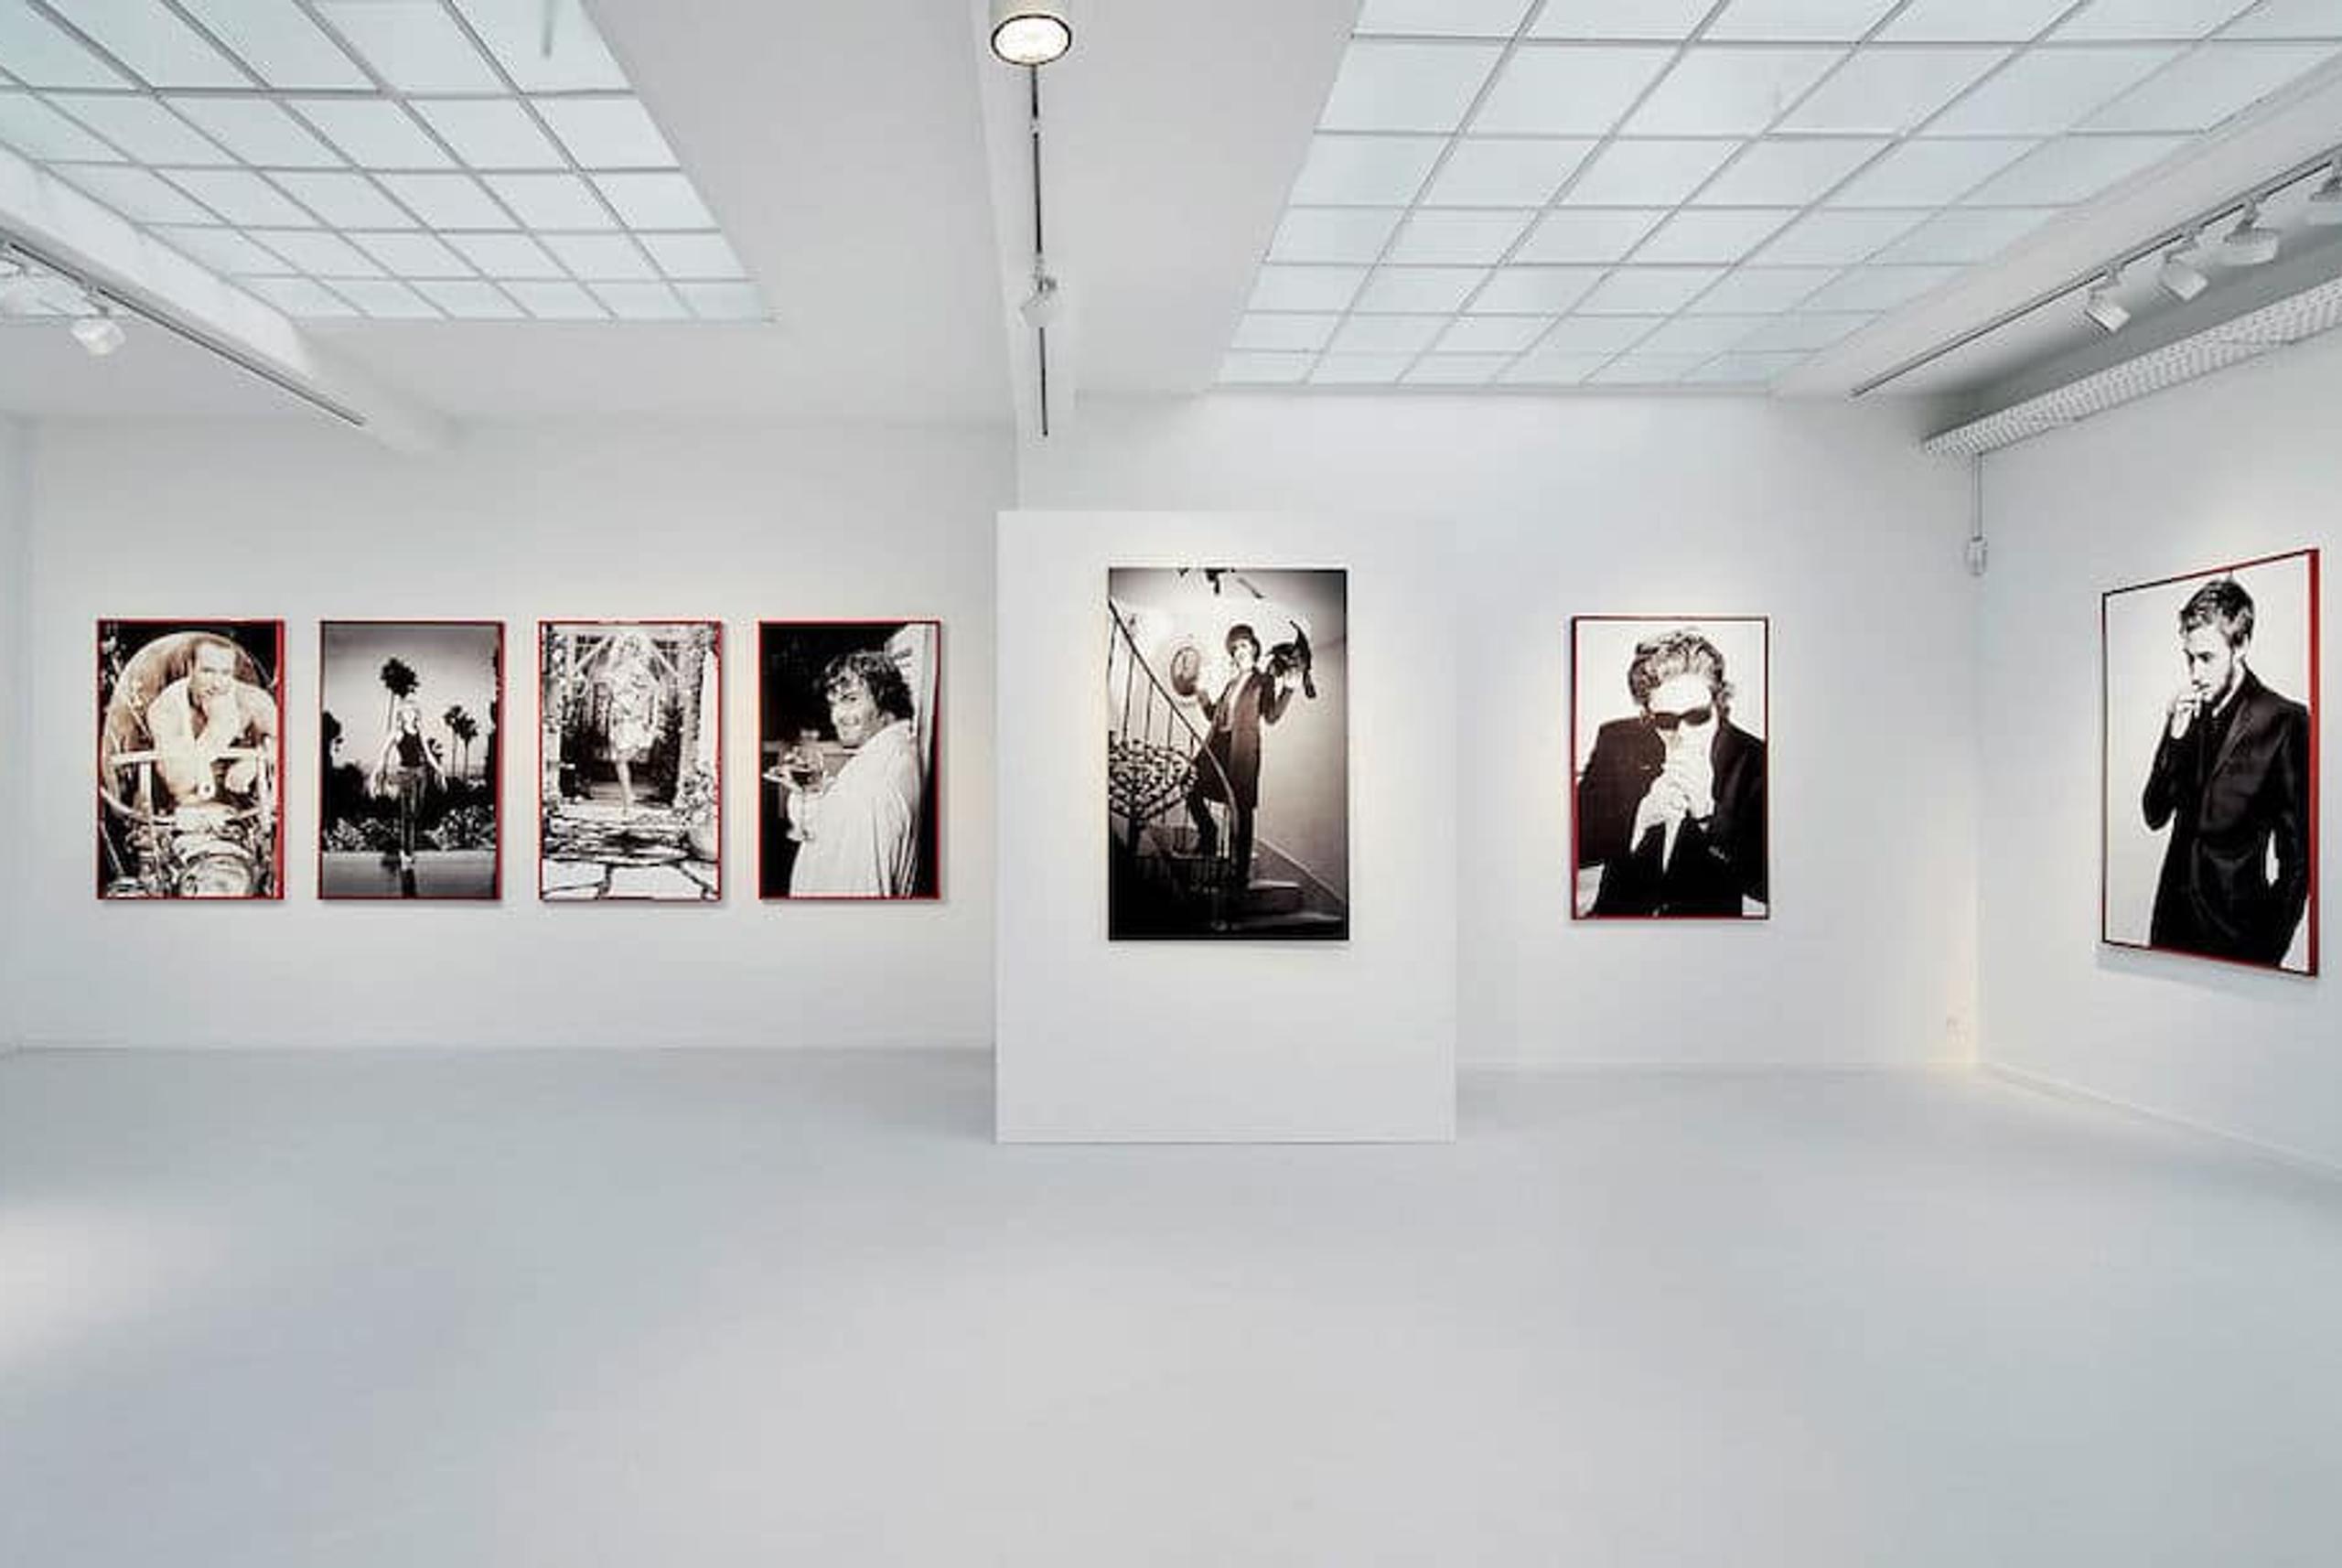 photography exhibition at the Galerie Gmurzynska in Zurich, Switzerland